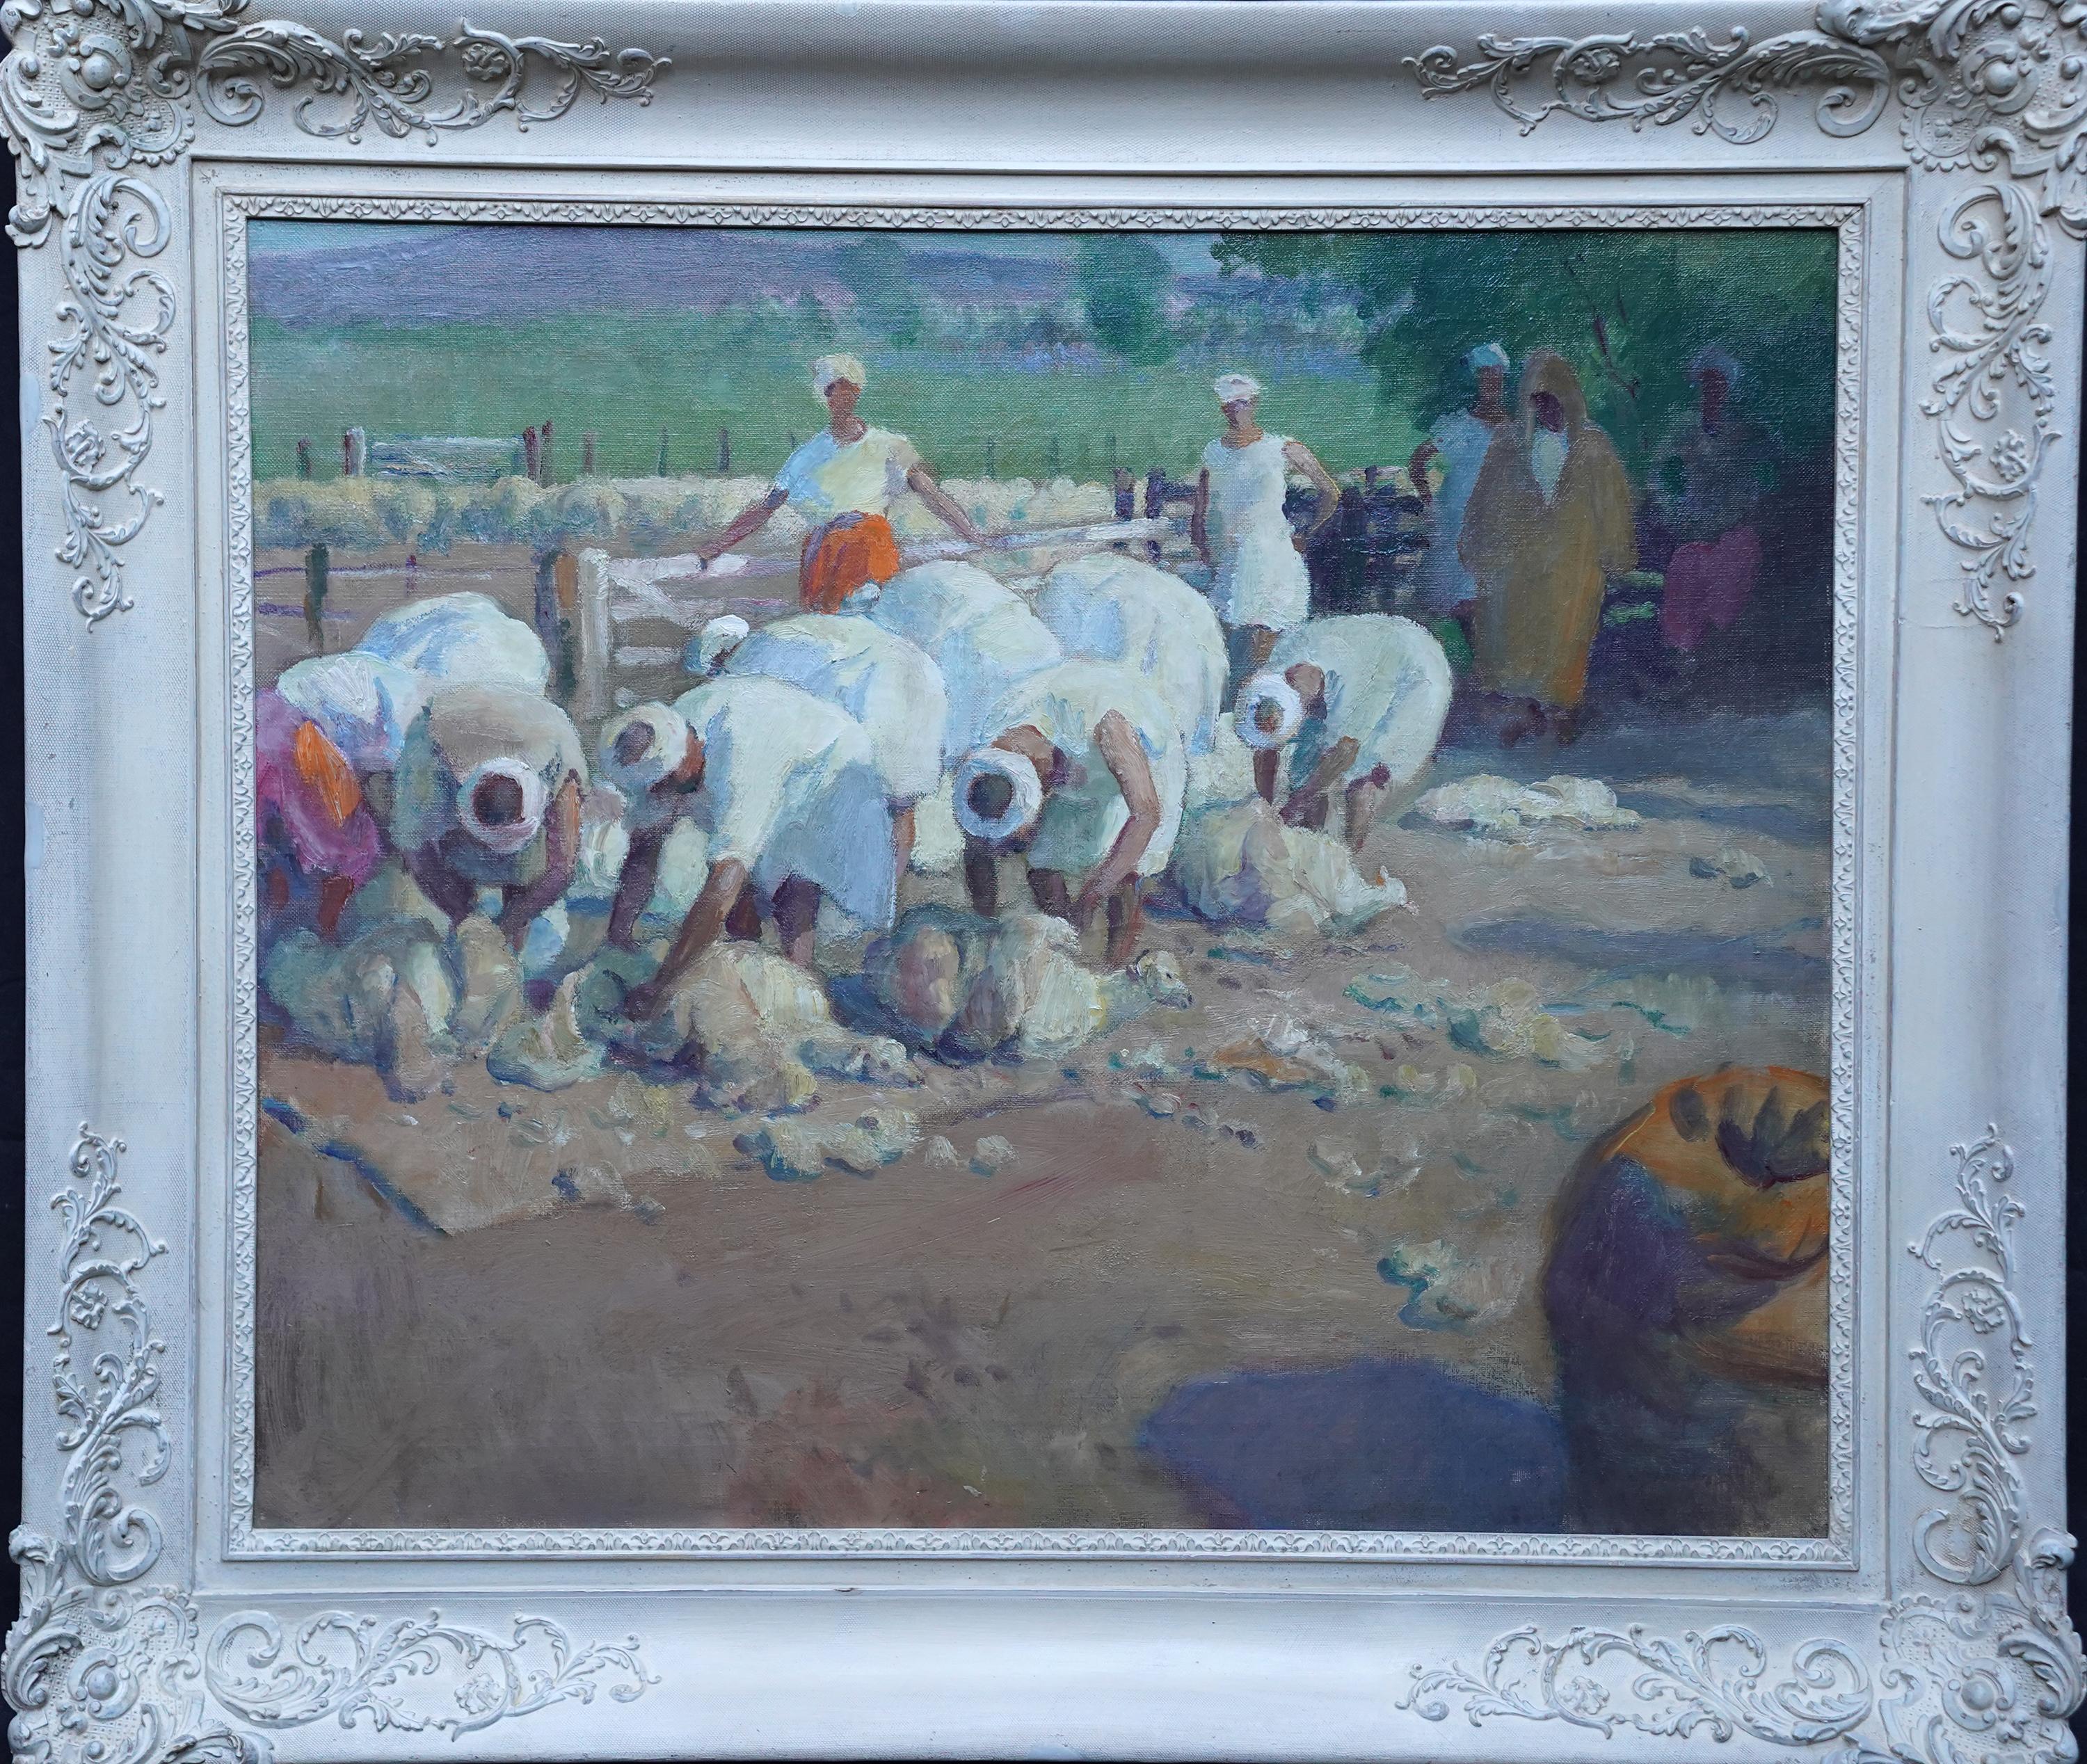 Moutons de mouton, Tangiers - Peinture à l'huile figurative orientaliste britannique des années 1920